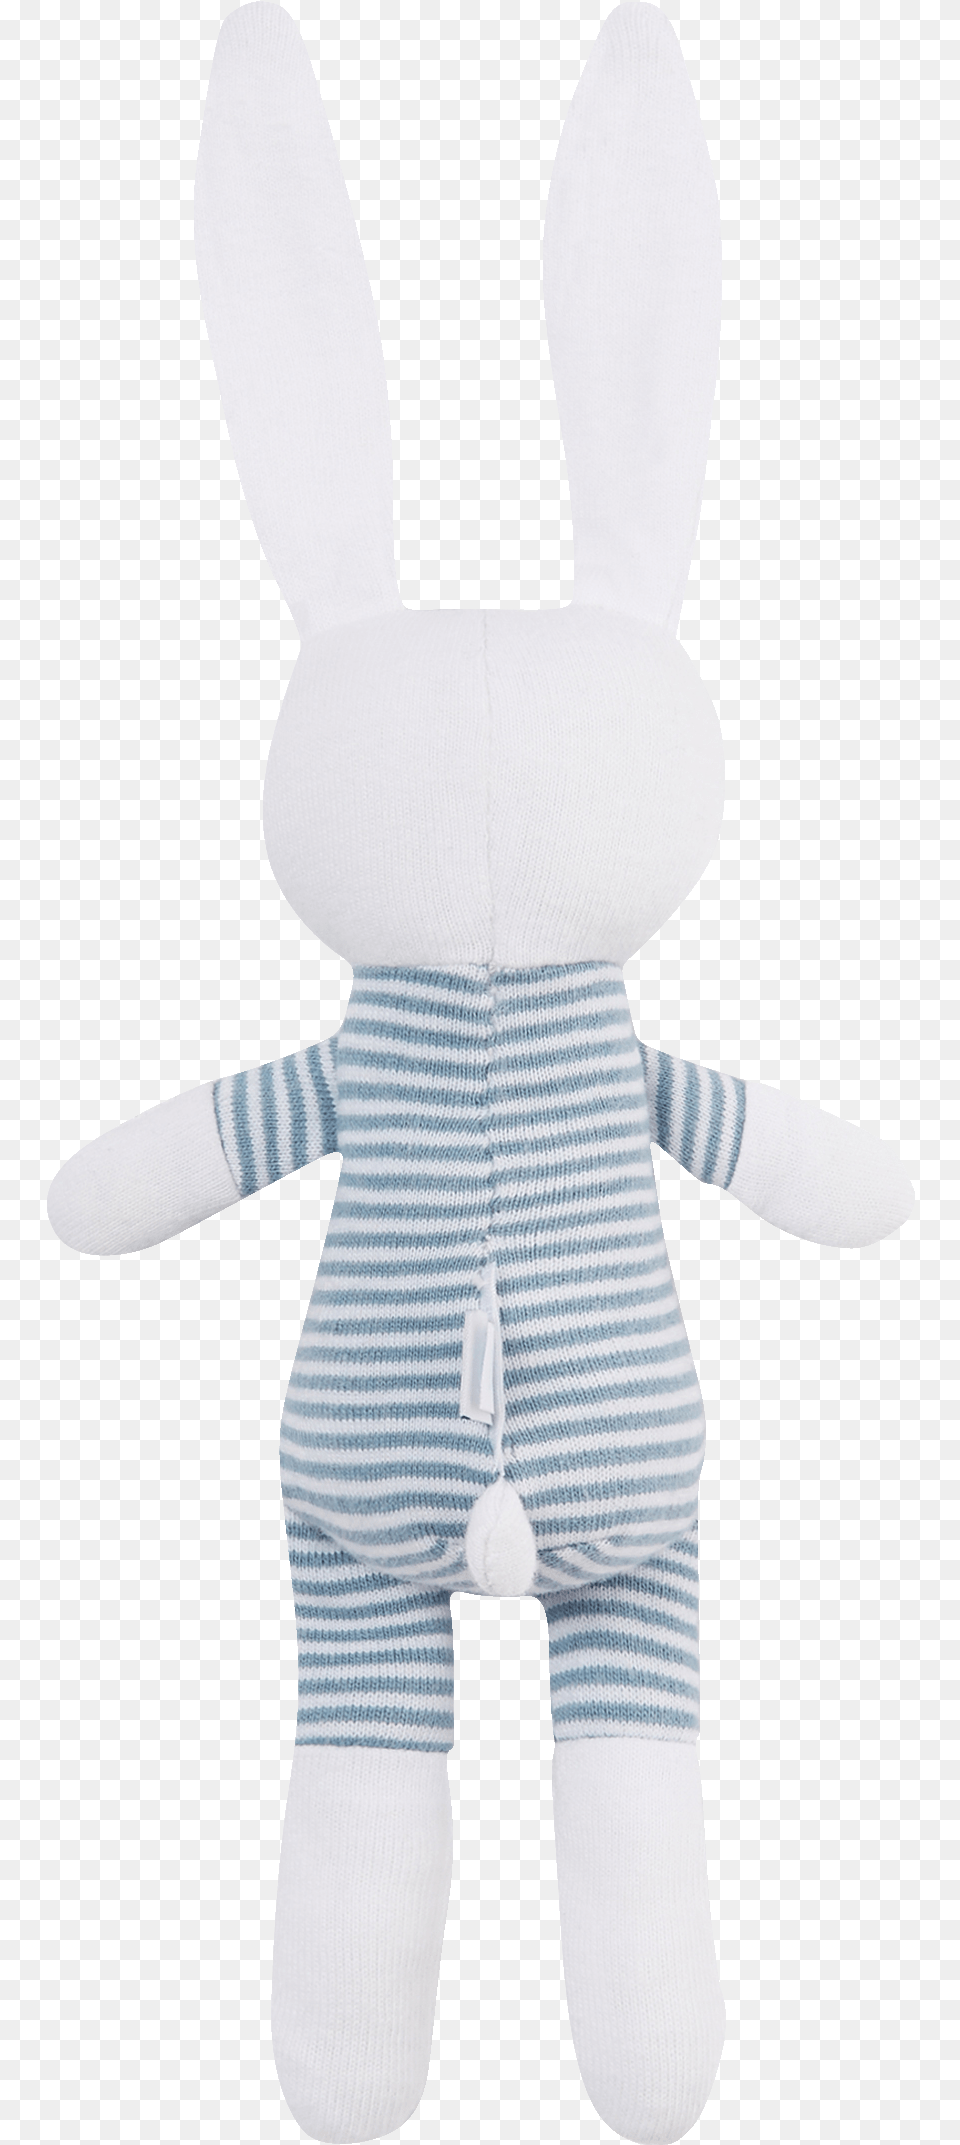 Stuffed Toy, Plush Png Image